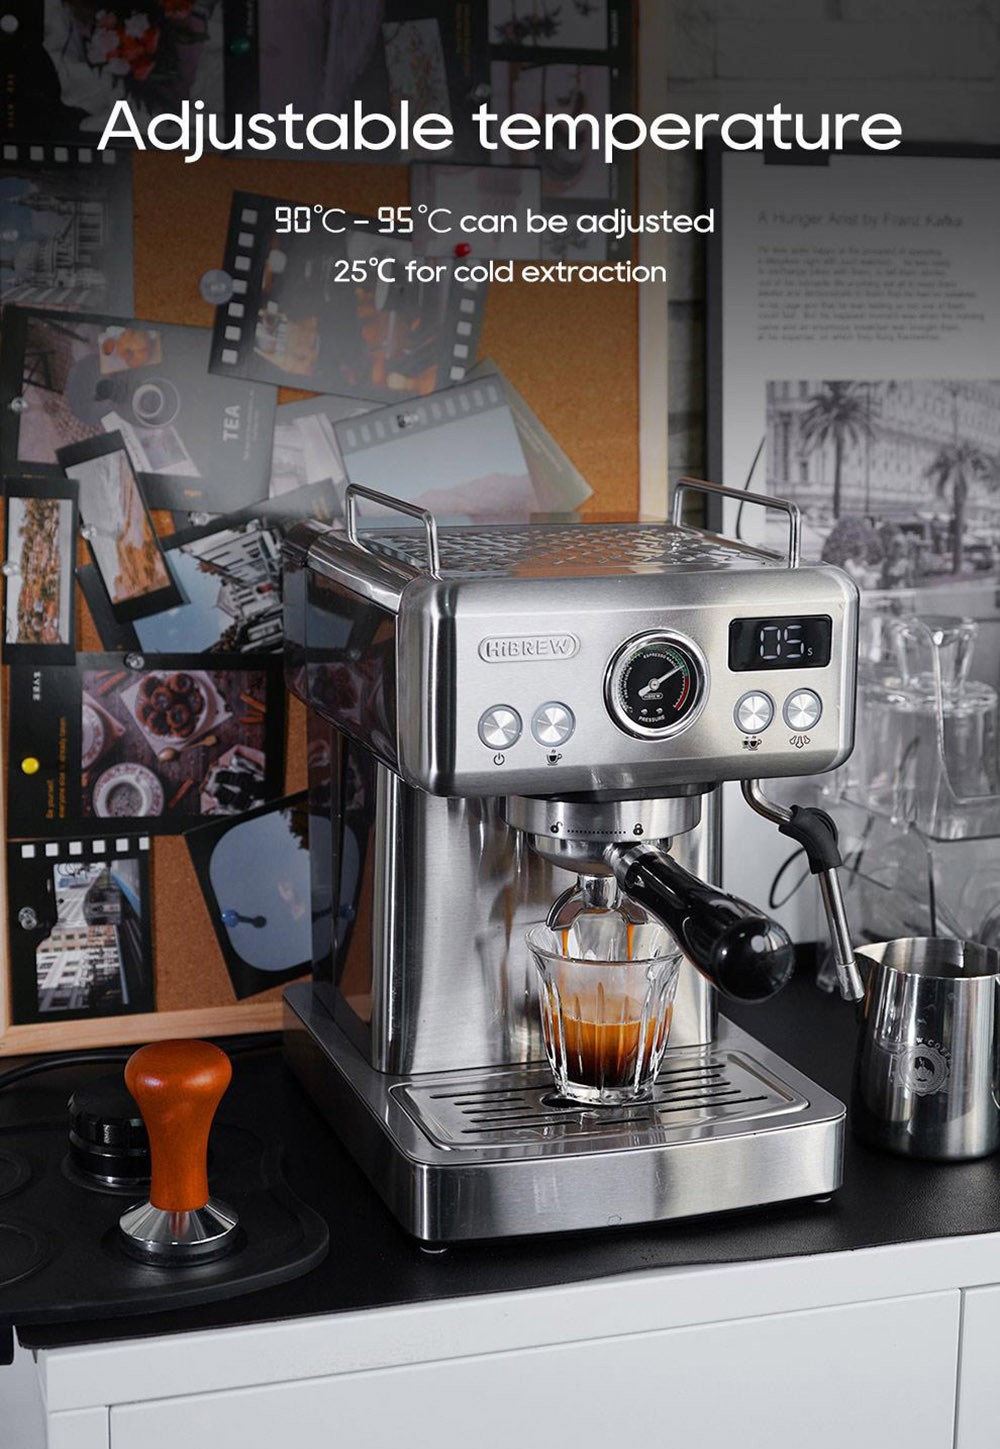 HiBREW H10A Semi Automatic Espresso Coffee Machine, 19Bar Pressure, Milk Frother - Silver